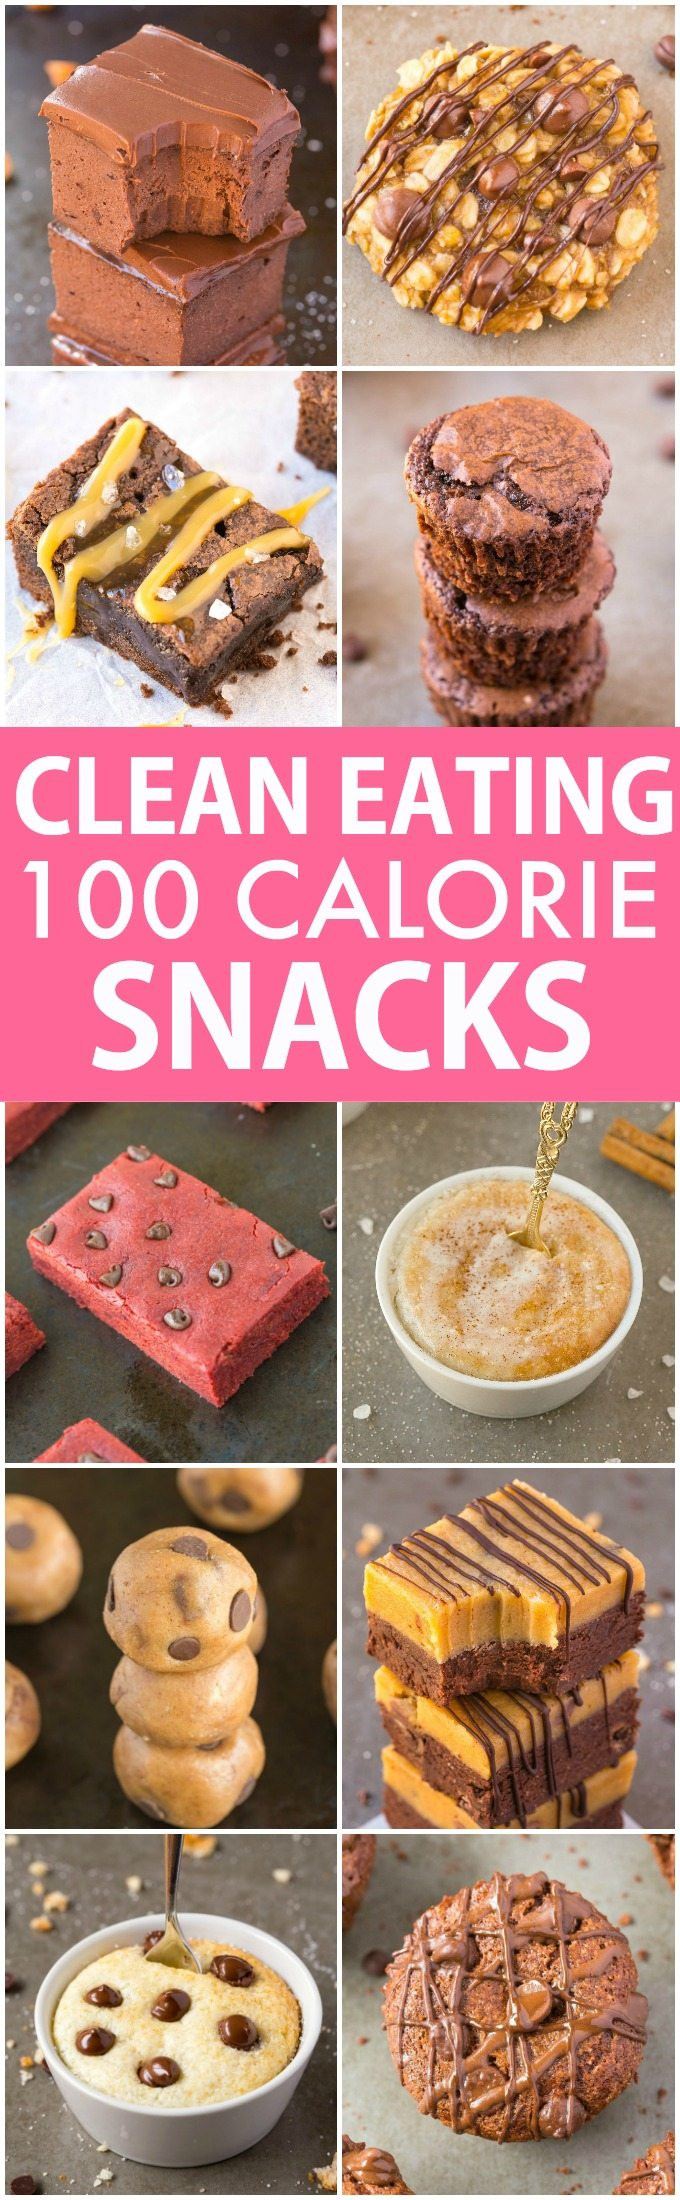 Sweet Healthy Snacks
 10 Clean Eating Healthy Sweet Snacks Under 100 Calories